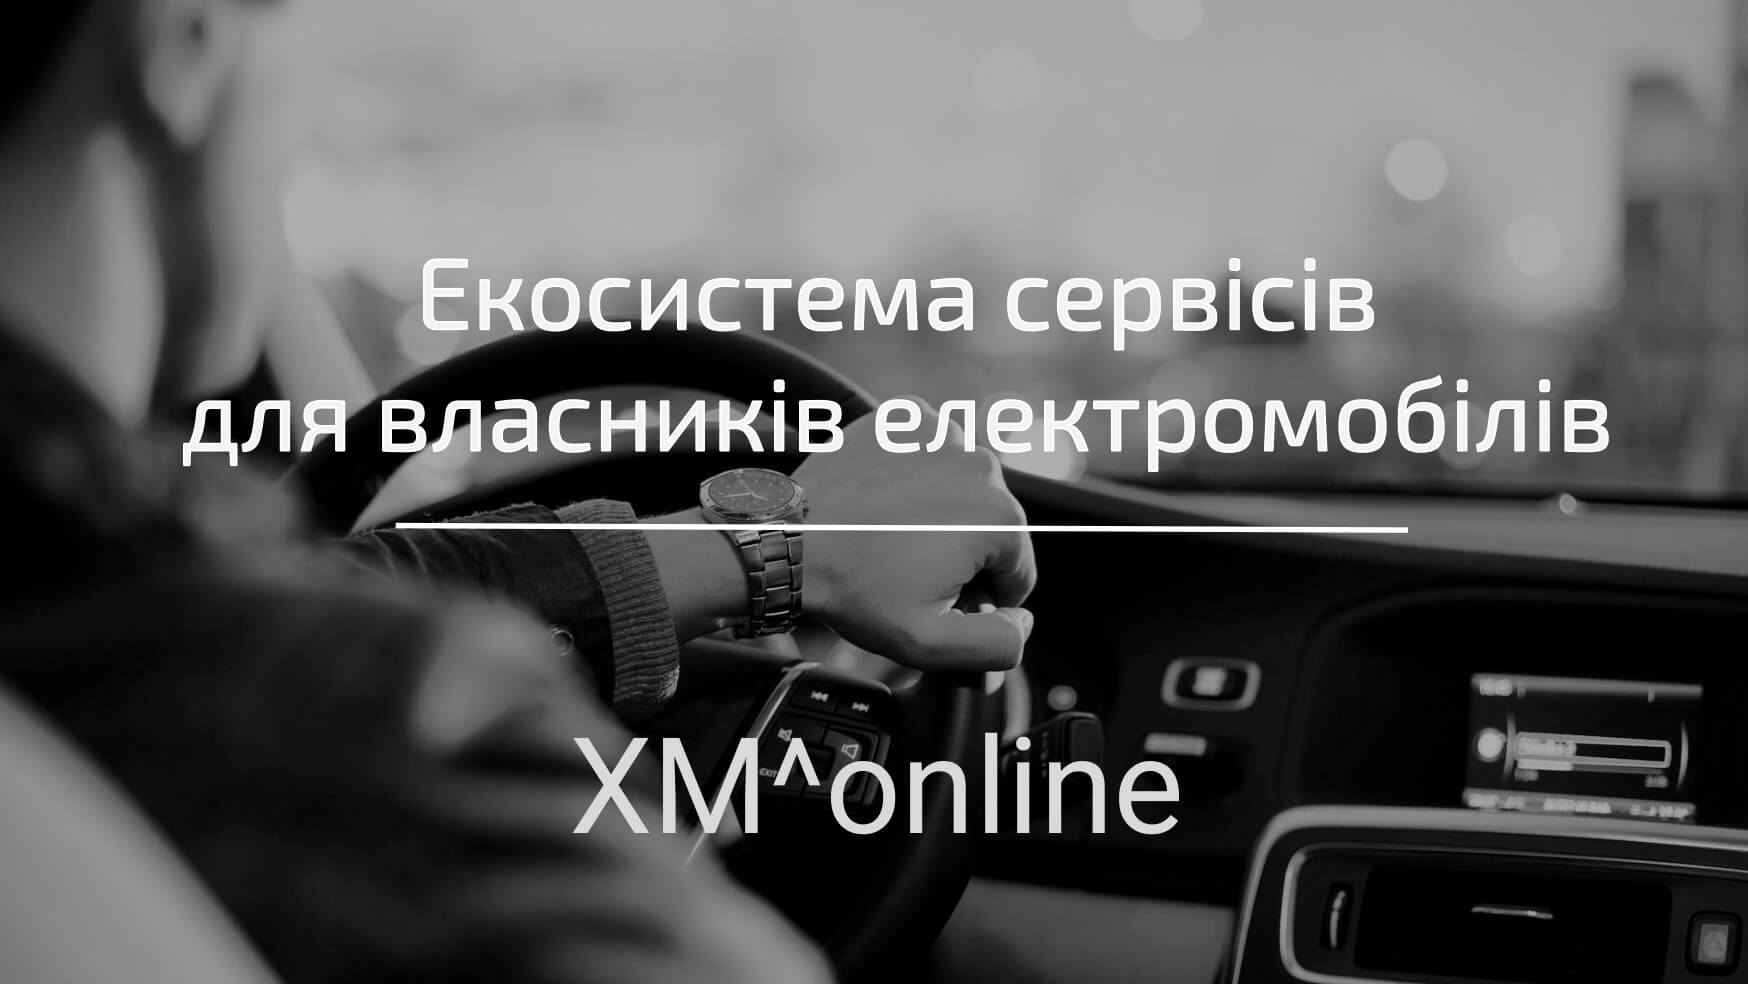 XM-online: экосистема сервисов для владельцев электромобилей